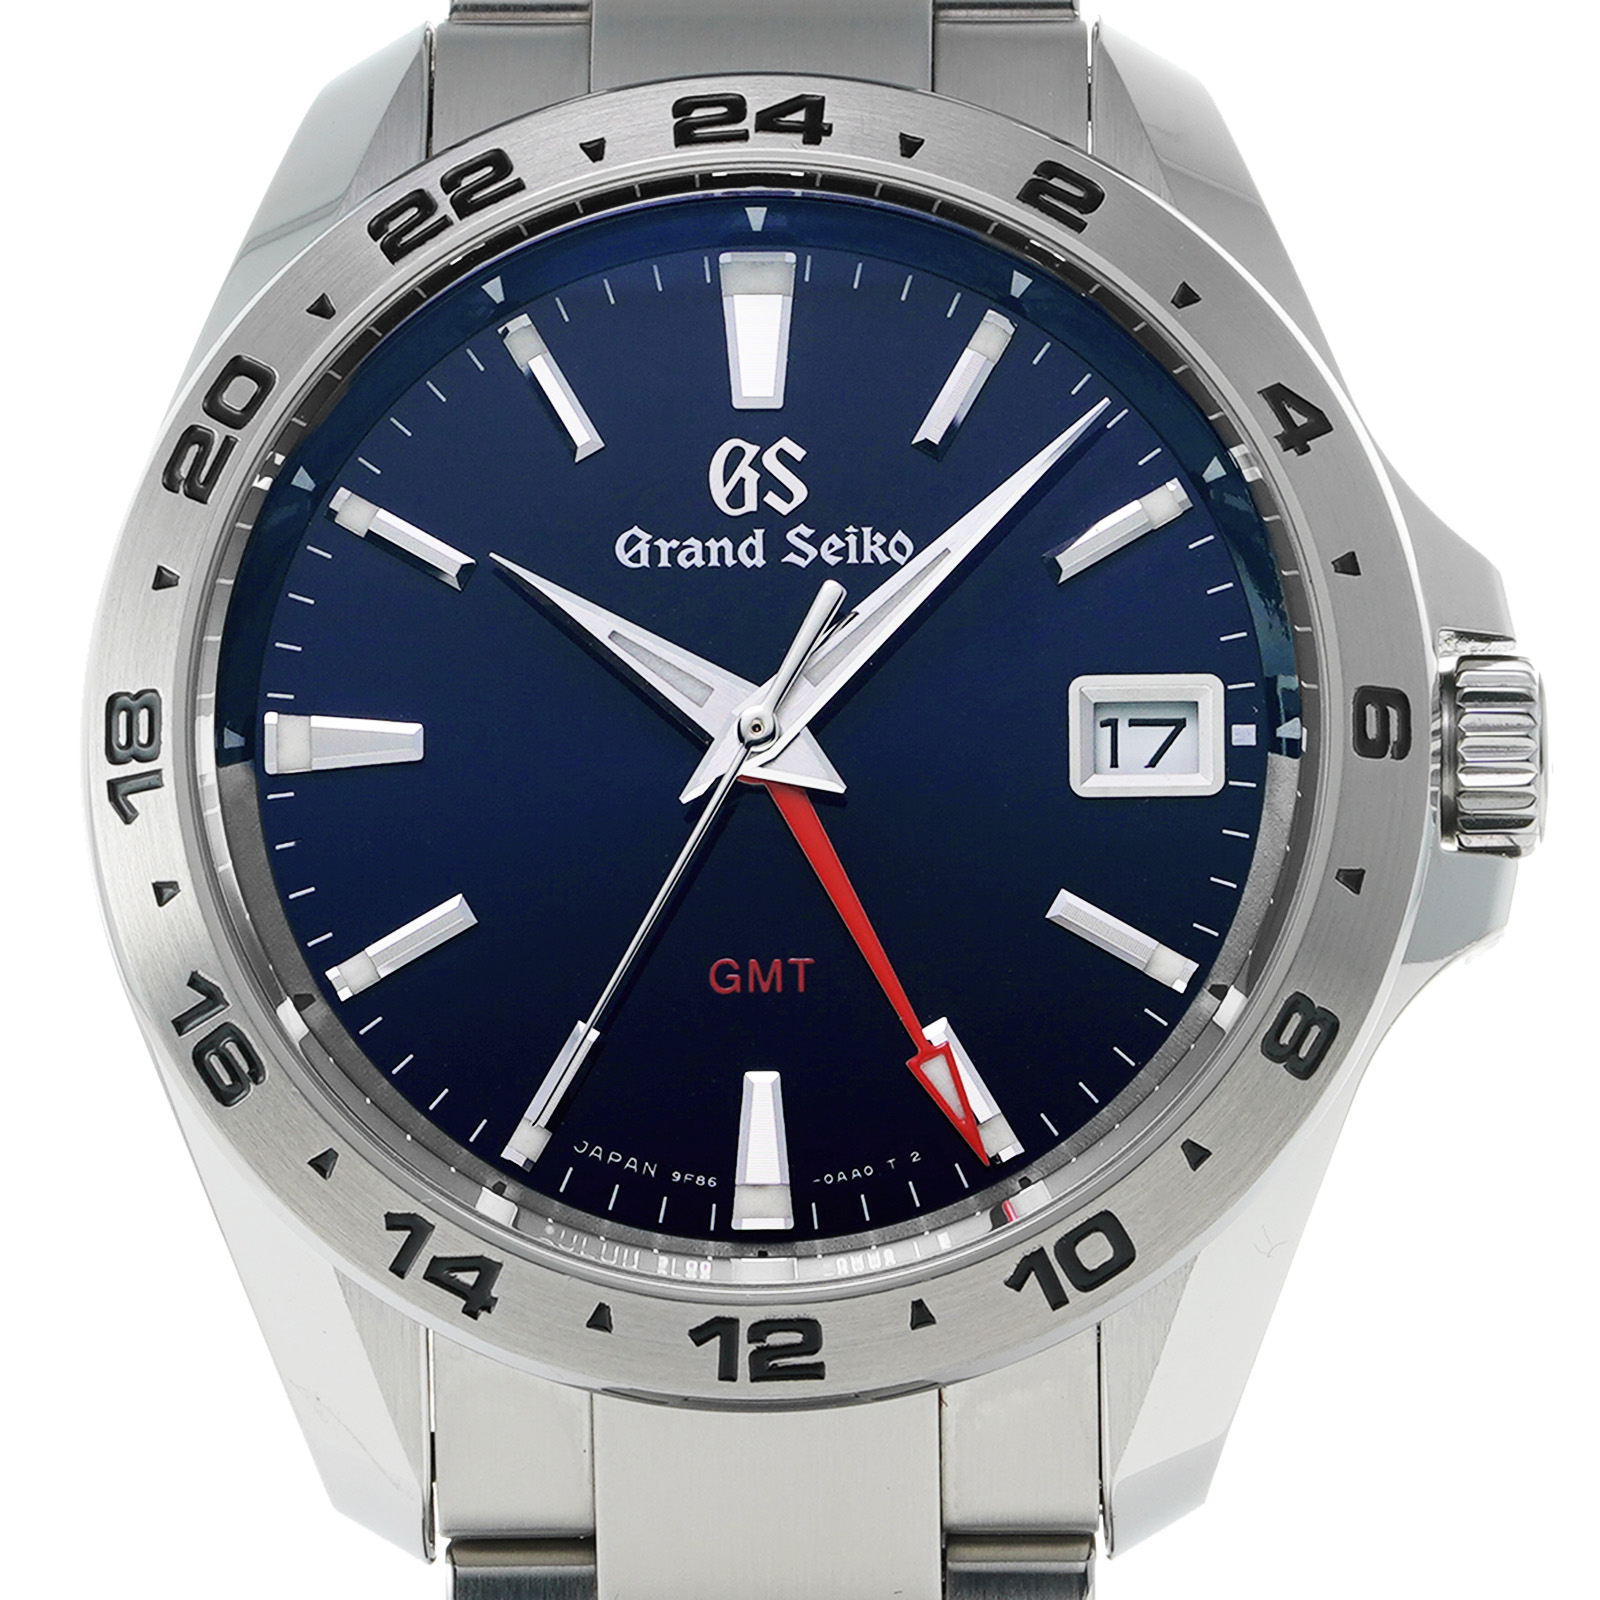 Grand Seiko グランドセイコー スポーツコレクション SBGN005 ブルー SS 腕時計 メンズ